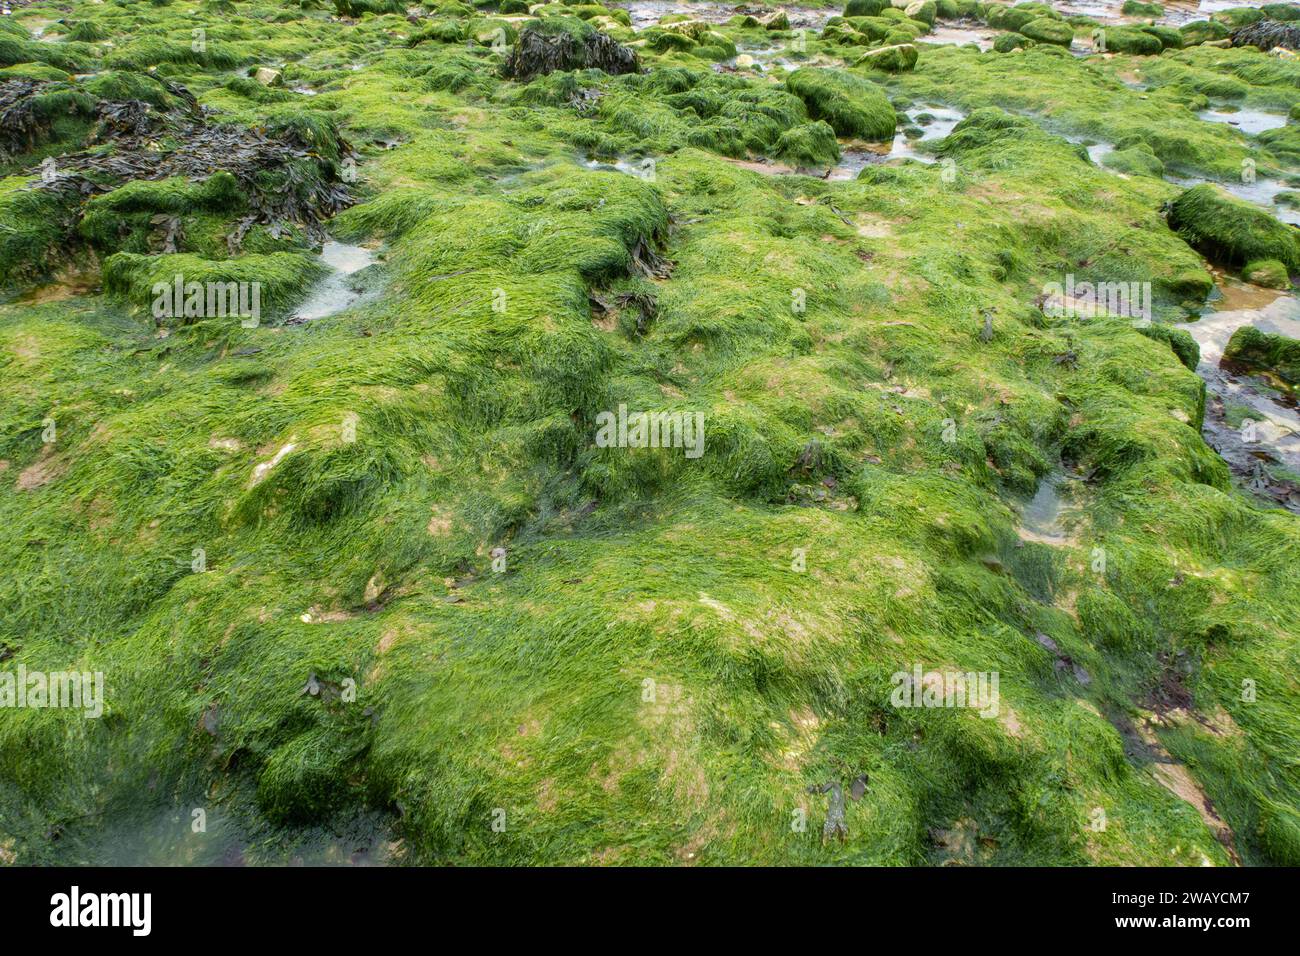 Muschio verde su fondo roccioso. Trovato lungo una spiaggia in Inghilterra Foto Stock